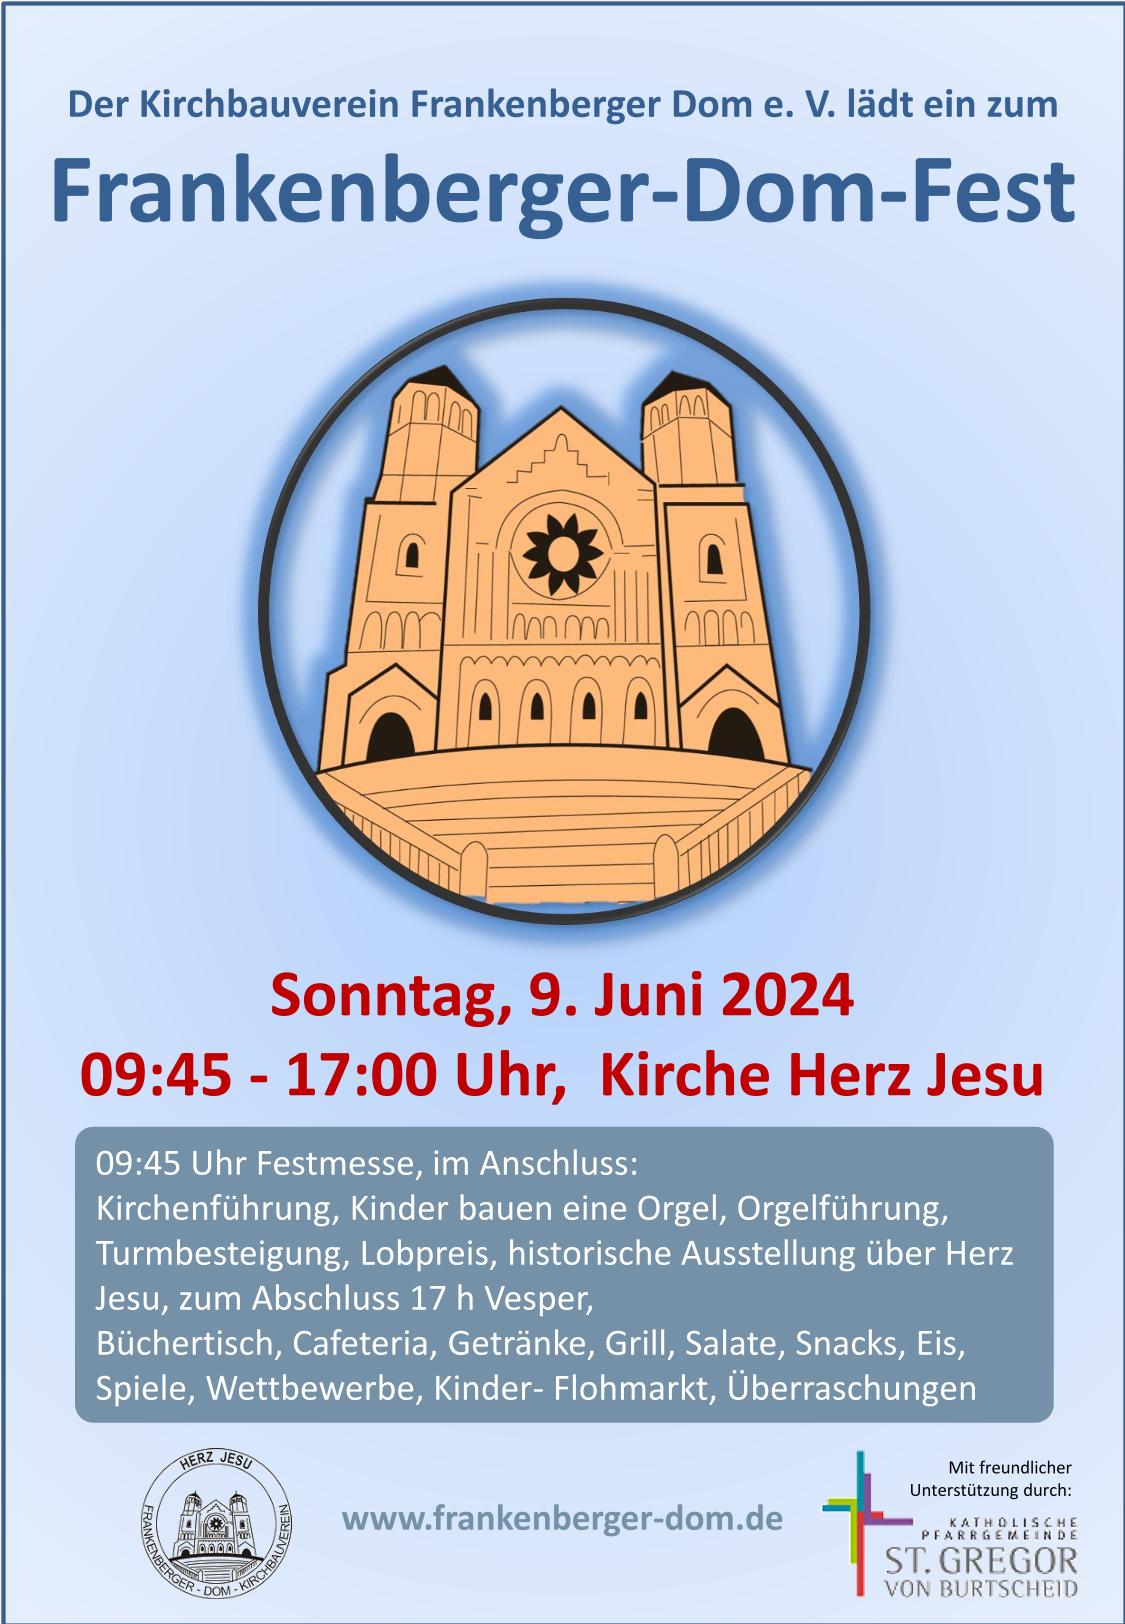 Plakat Frankenberger-Dom-Fest 2024 (c) Frankenberger Dom e. V.